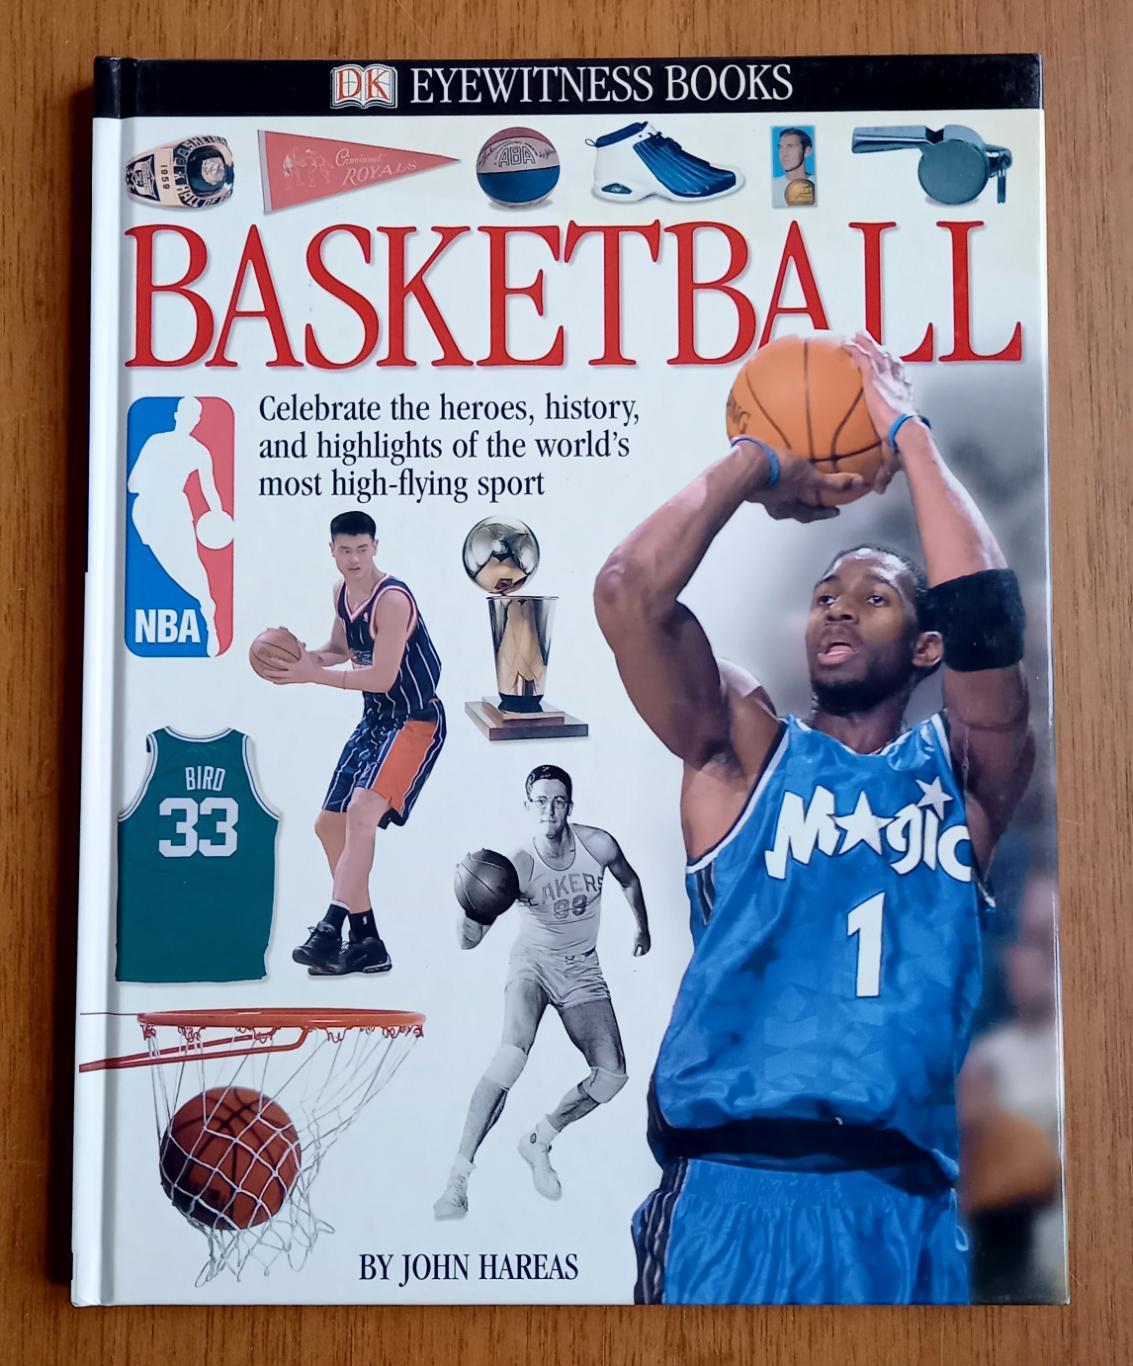 Баскетбол. Книга из серии DK Eyewitness Books (английский язык)